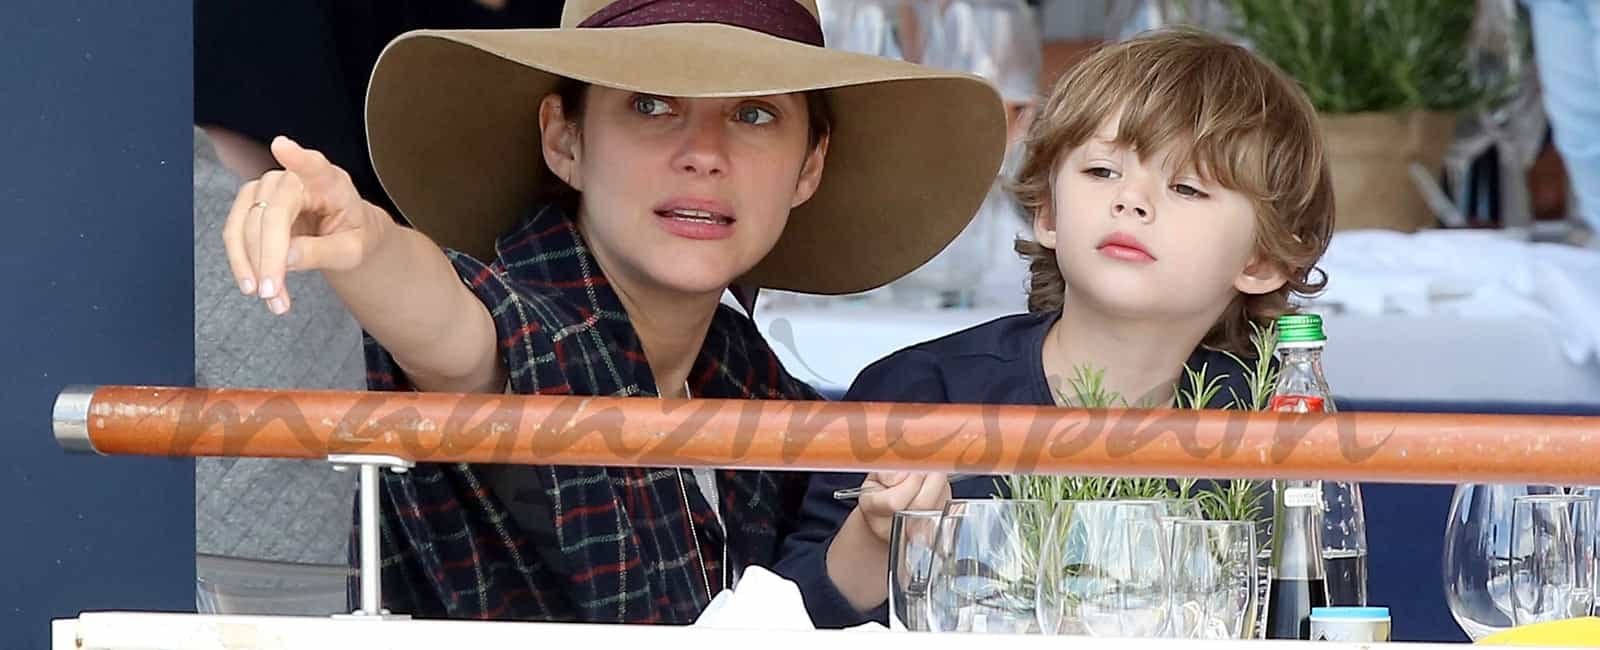 Marion Cotillard confirma su embarazo y niega su romance con Brad Pitt